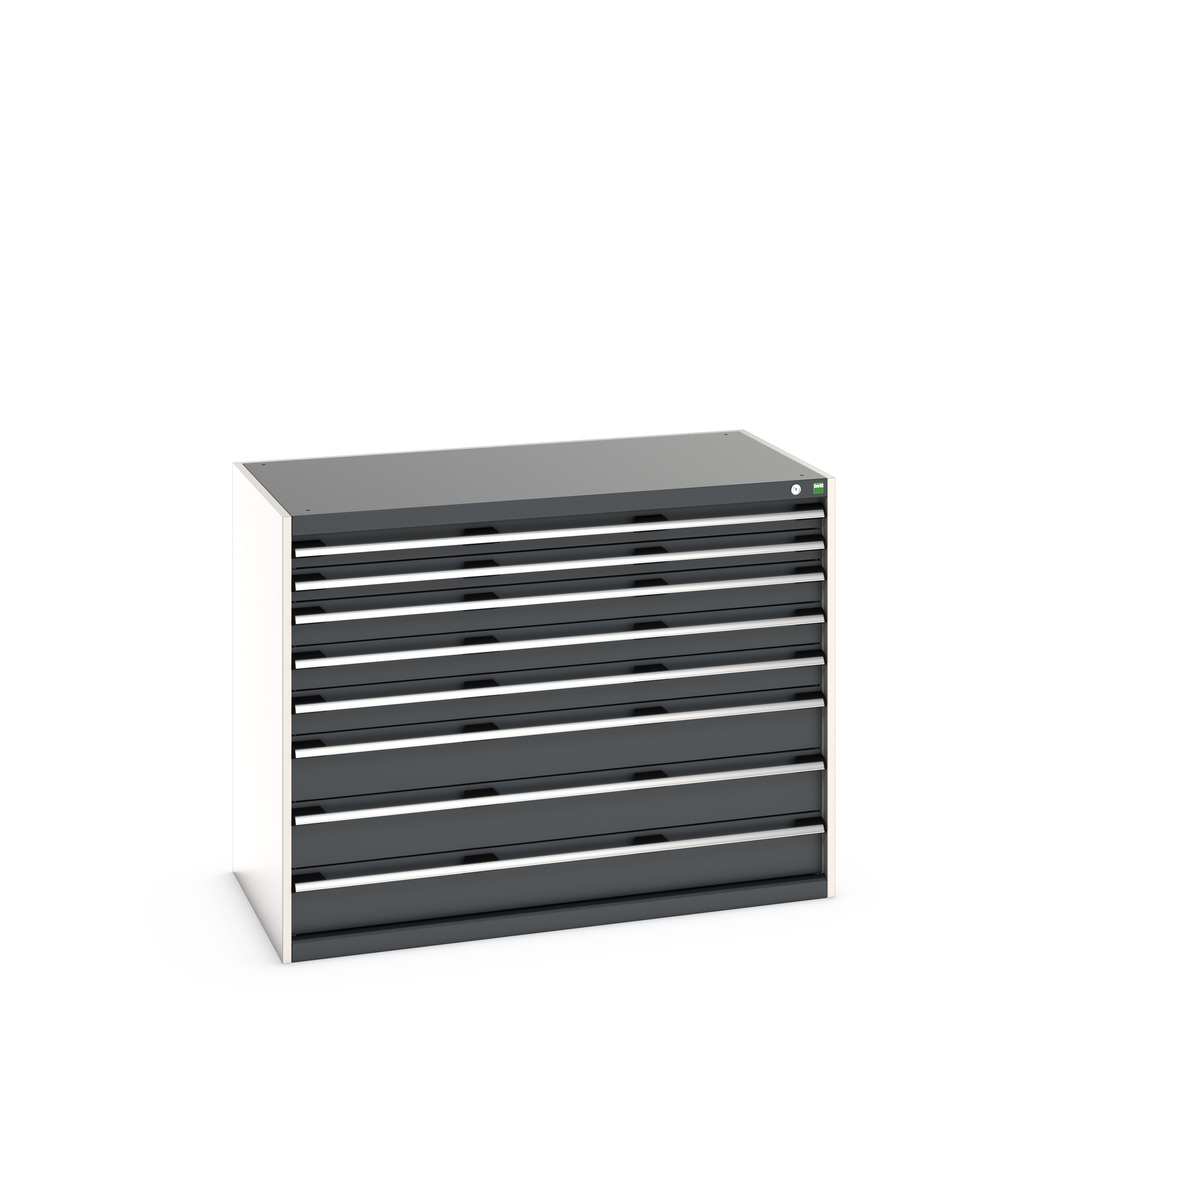 40030020.19V - cubio drawer cabinet